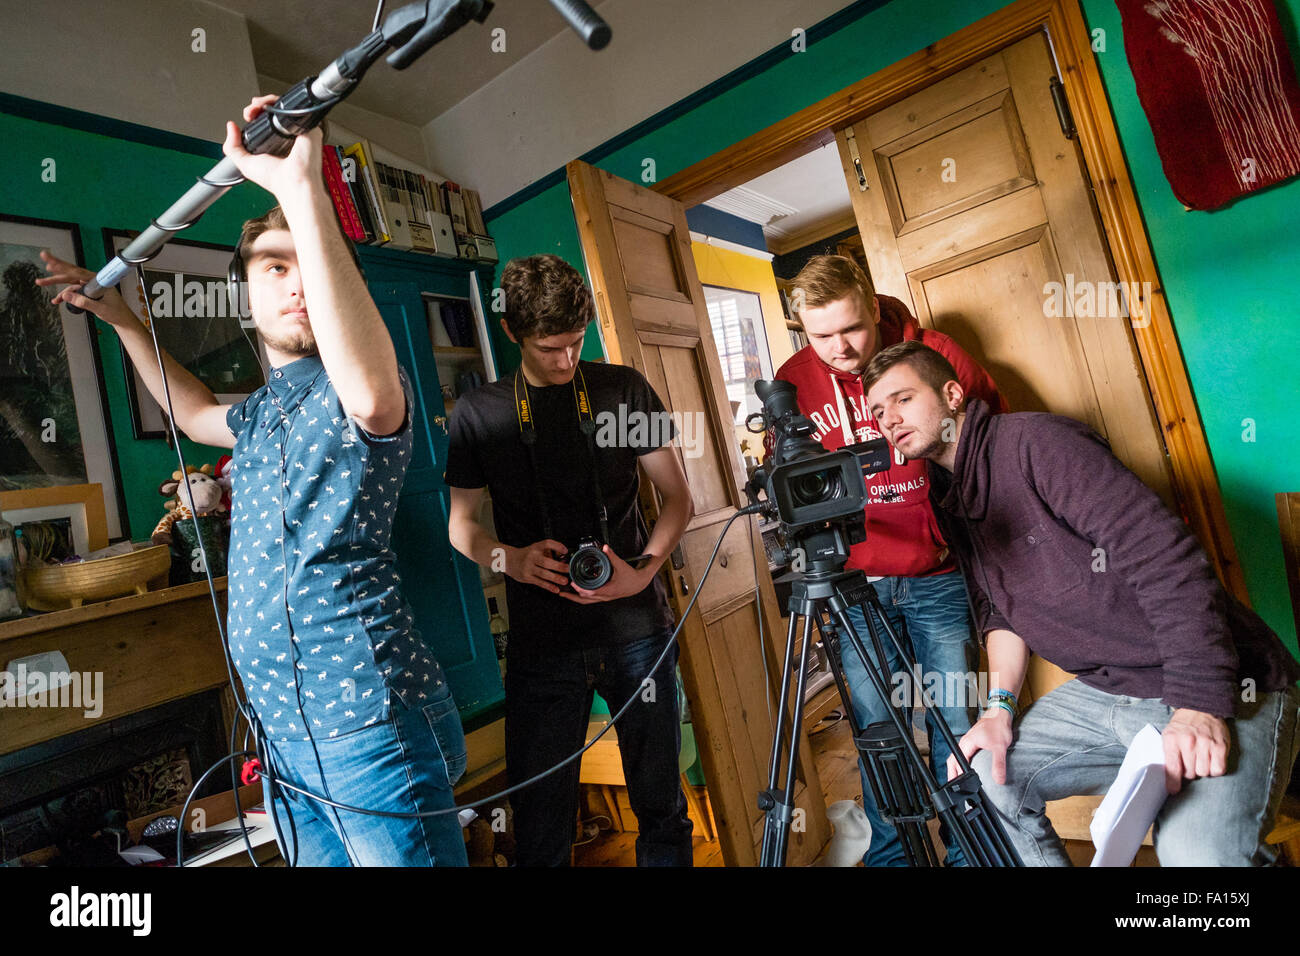 Quatre étudiants de l'université d'Aberystwyth Theatre Film and Television Studies Department de l'enregistrement d'une vidéo interview dans une chambre intérieure uk : caméraman, ingénieur du son 12 Novembre 2015 Banque D'Images